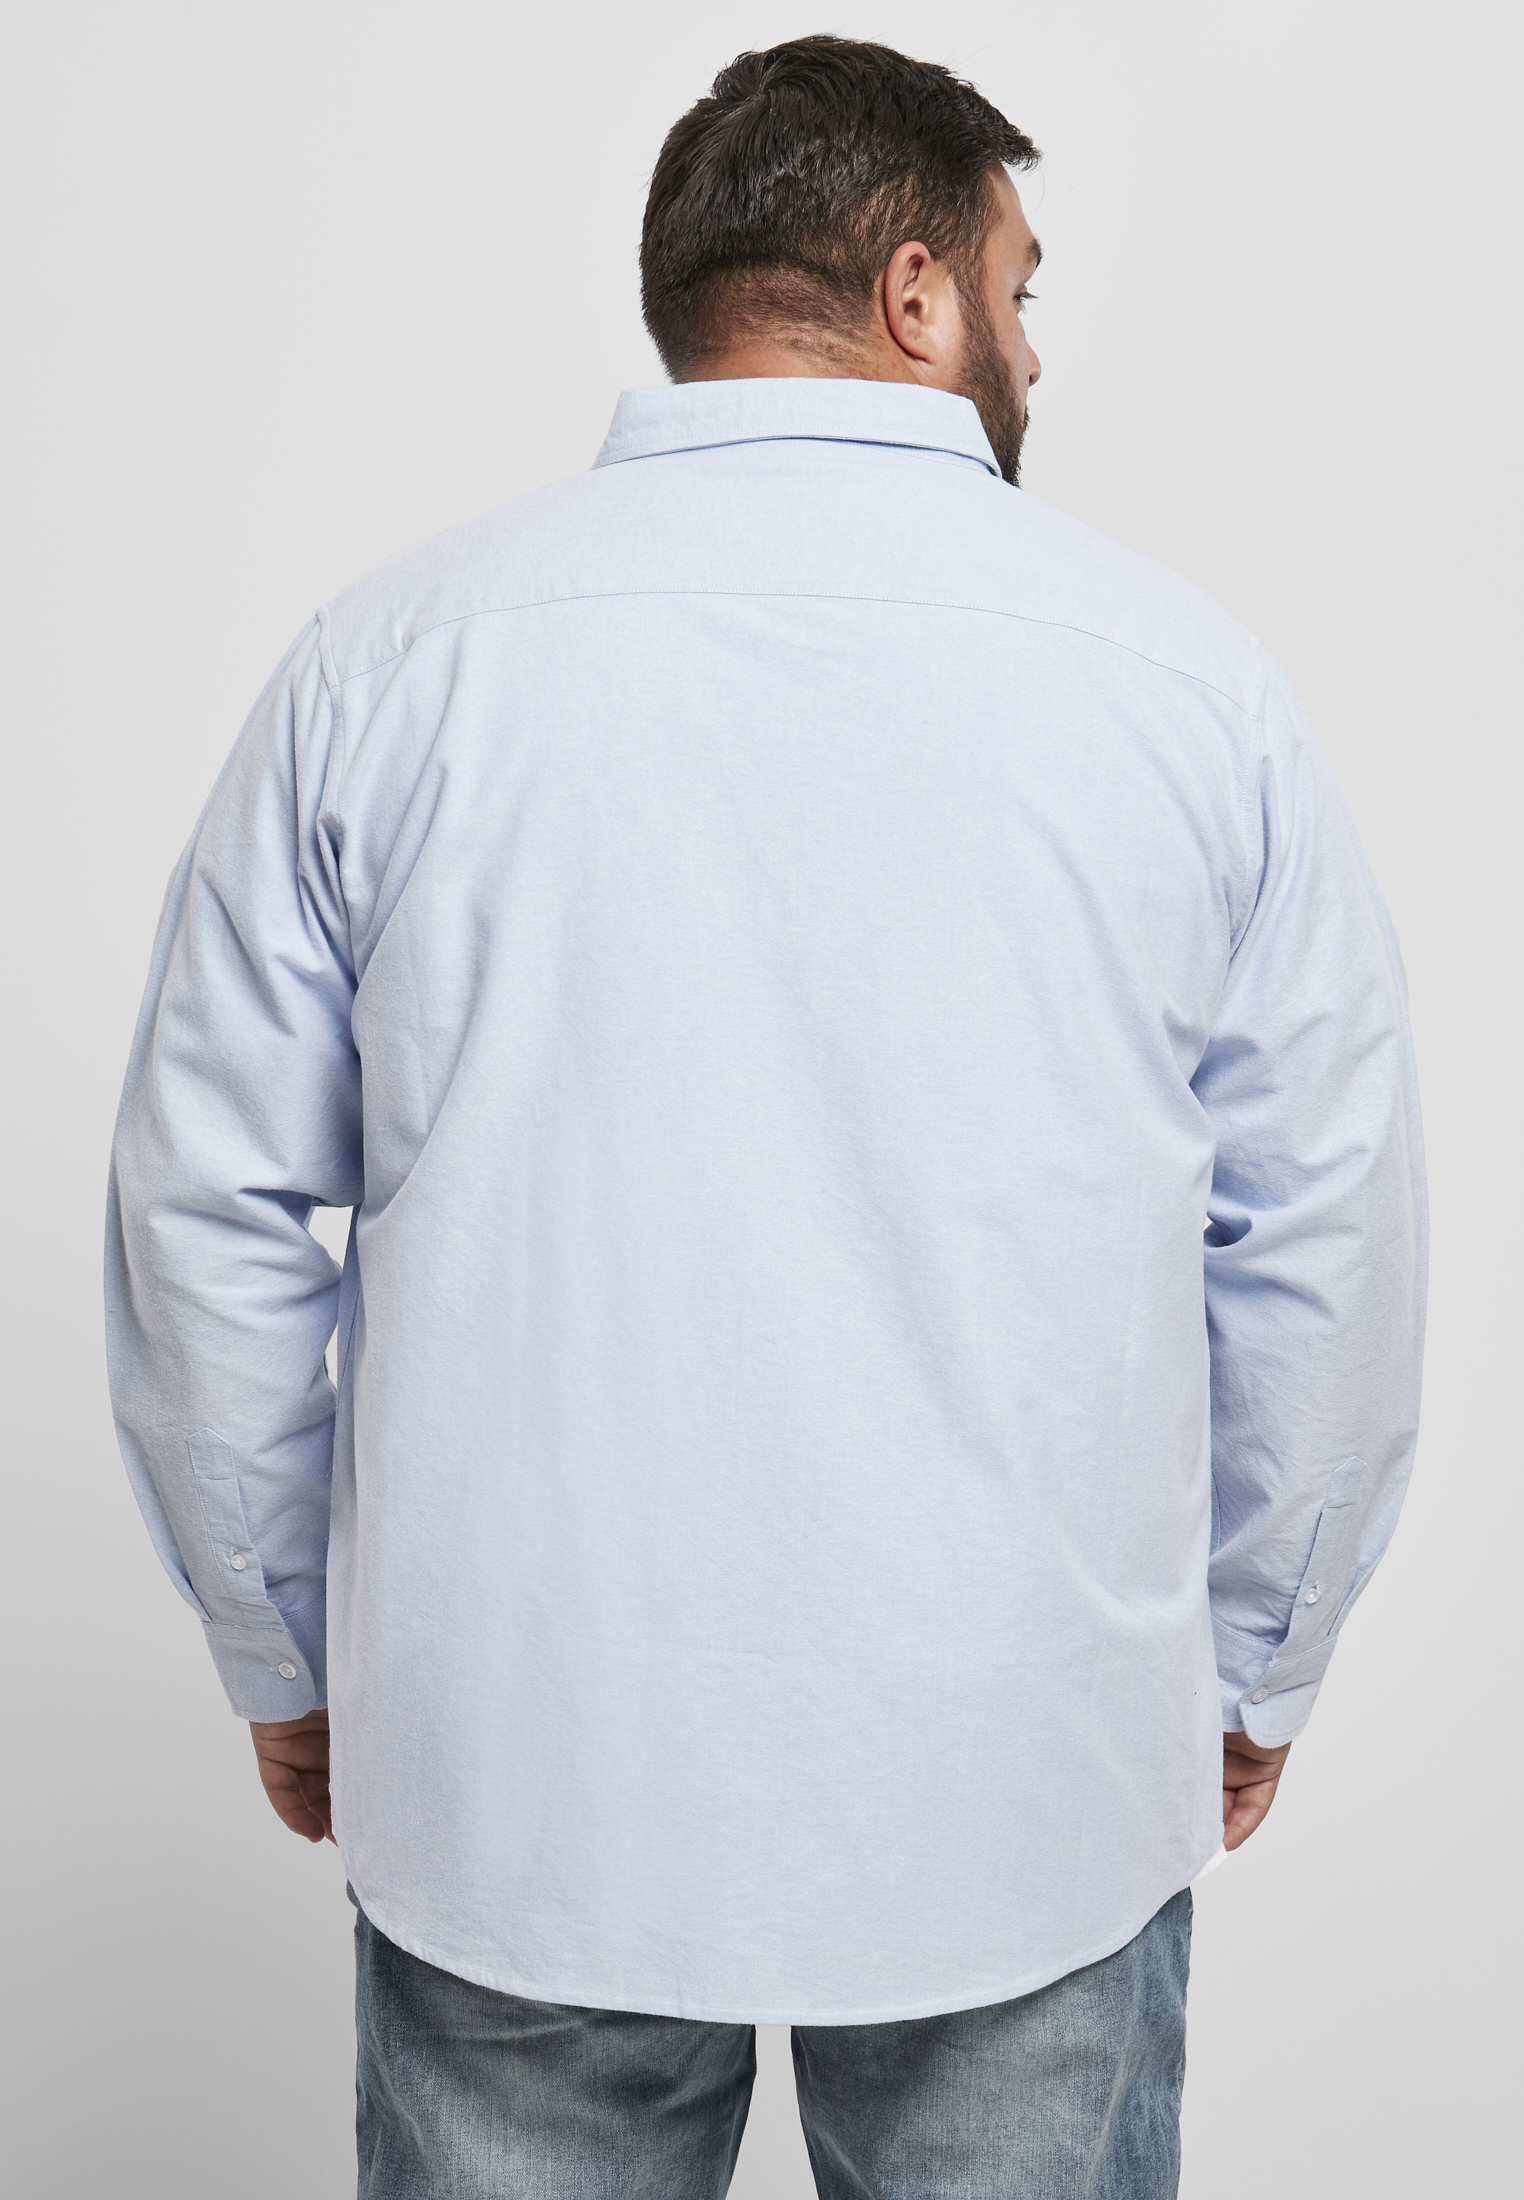 Hemden Basic Oxford Shirt in Farbe blue/wht